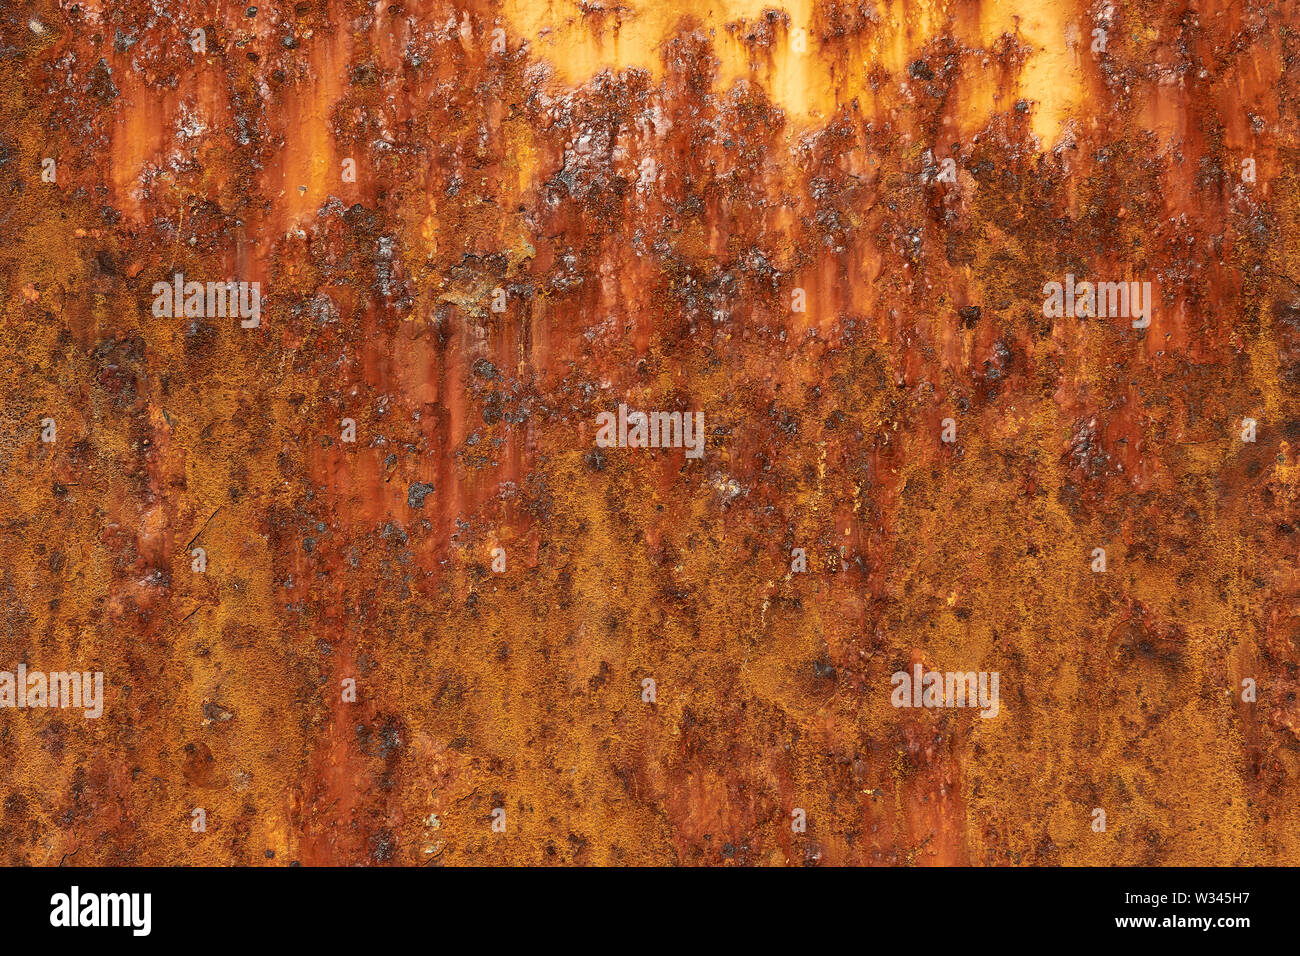 Superficie metálica de hierro oxidado textura del fondo Foto de stock